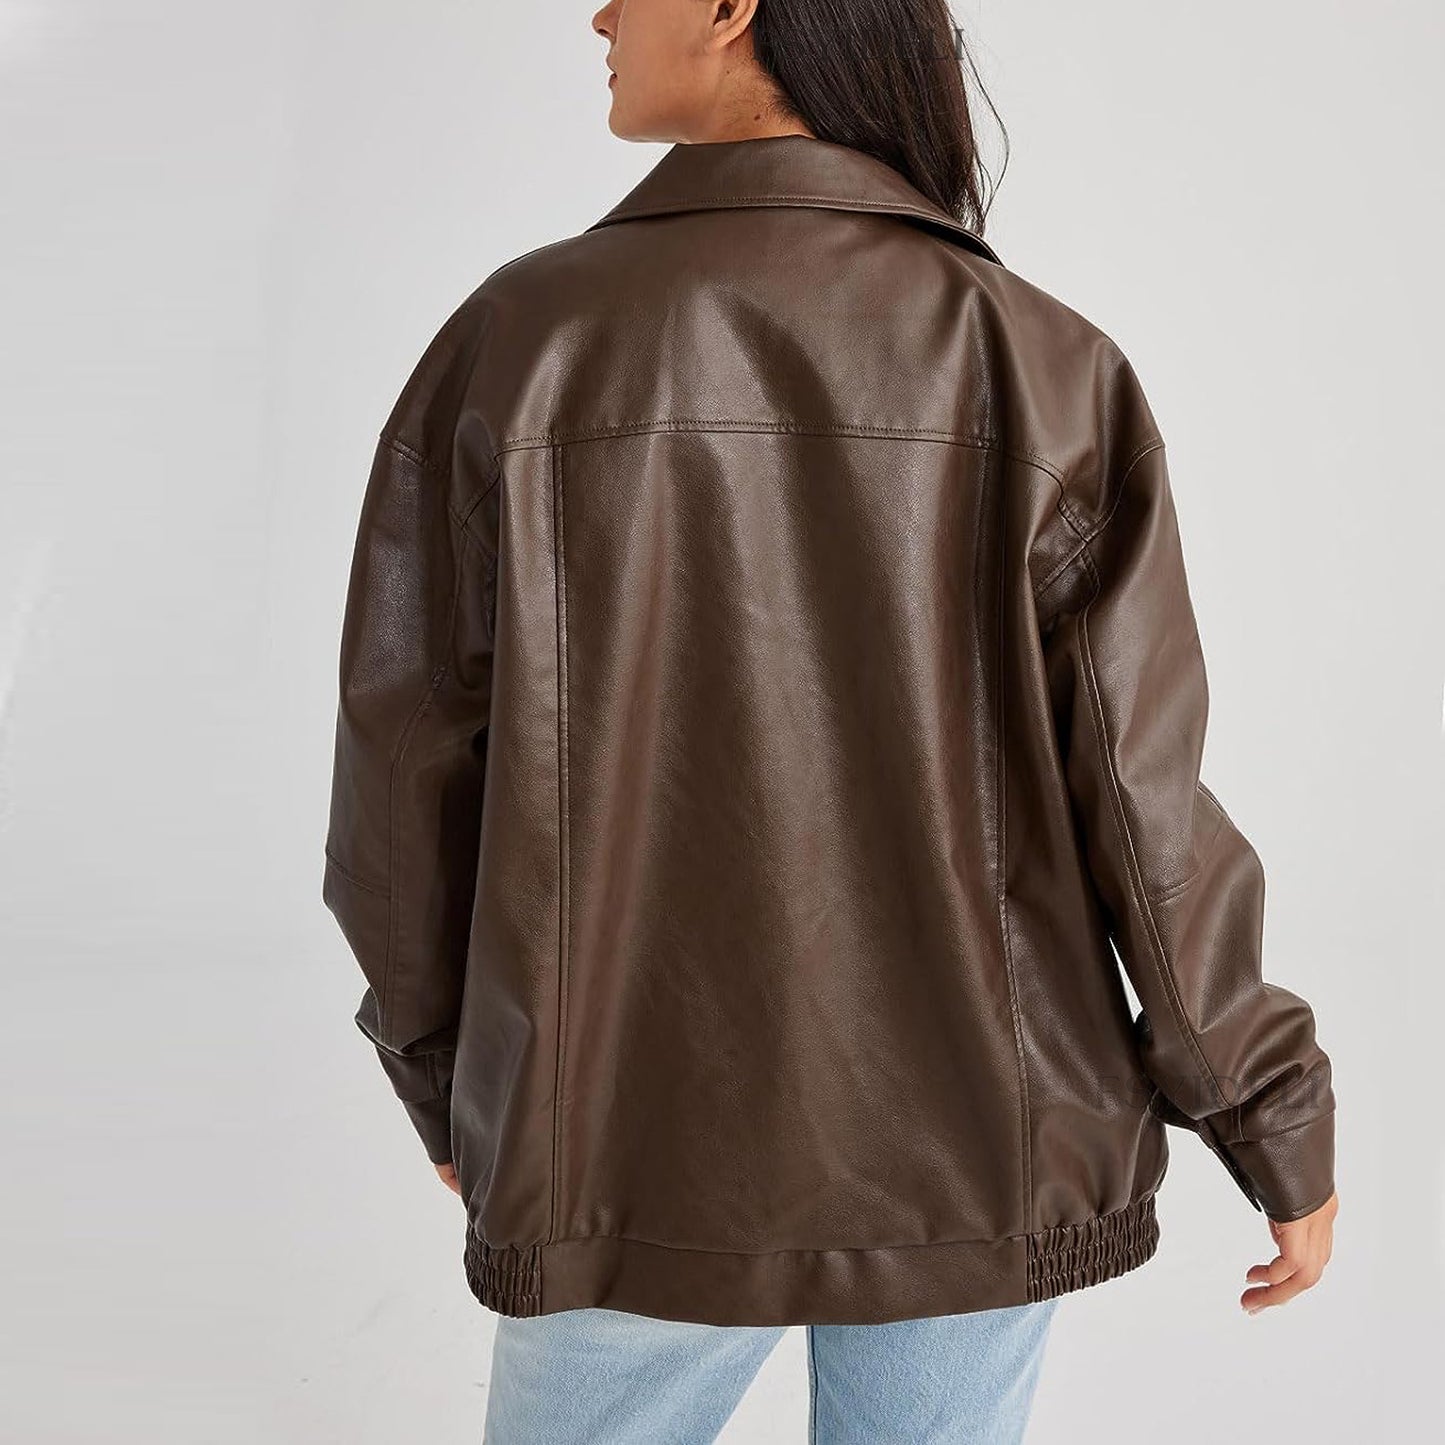 Leather Coat Women's Locomotive Style Top